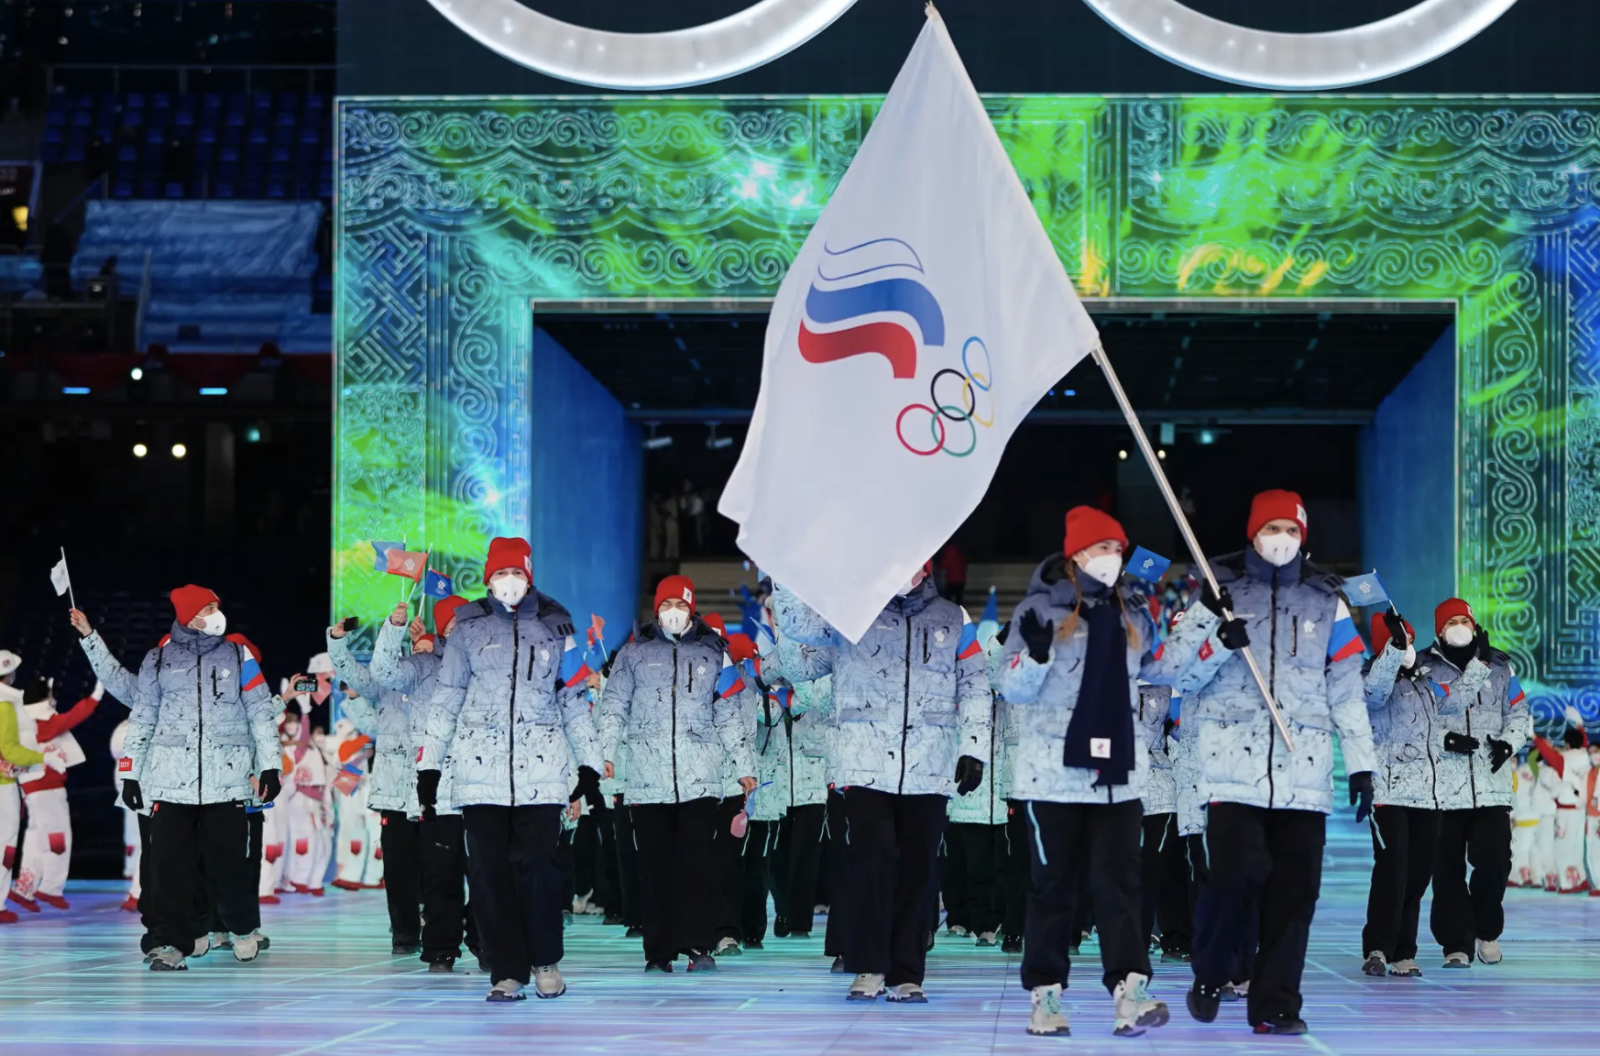 Mặc dù cấm quốc kỳ Nga tại Olympic, nhưng tình yêu đối với quốc kỳ vẫn ngập tràn trong trái tim của người dân Nga. Thông qua những hình ảnh đẹp và ấn tượng liên quan đến cờ, chúng ta vẫn có thể thể hiện niềm tự hào về quốc kỳ Nga.